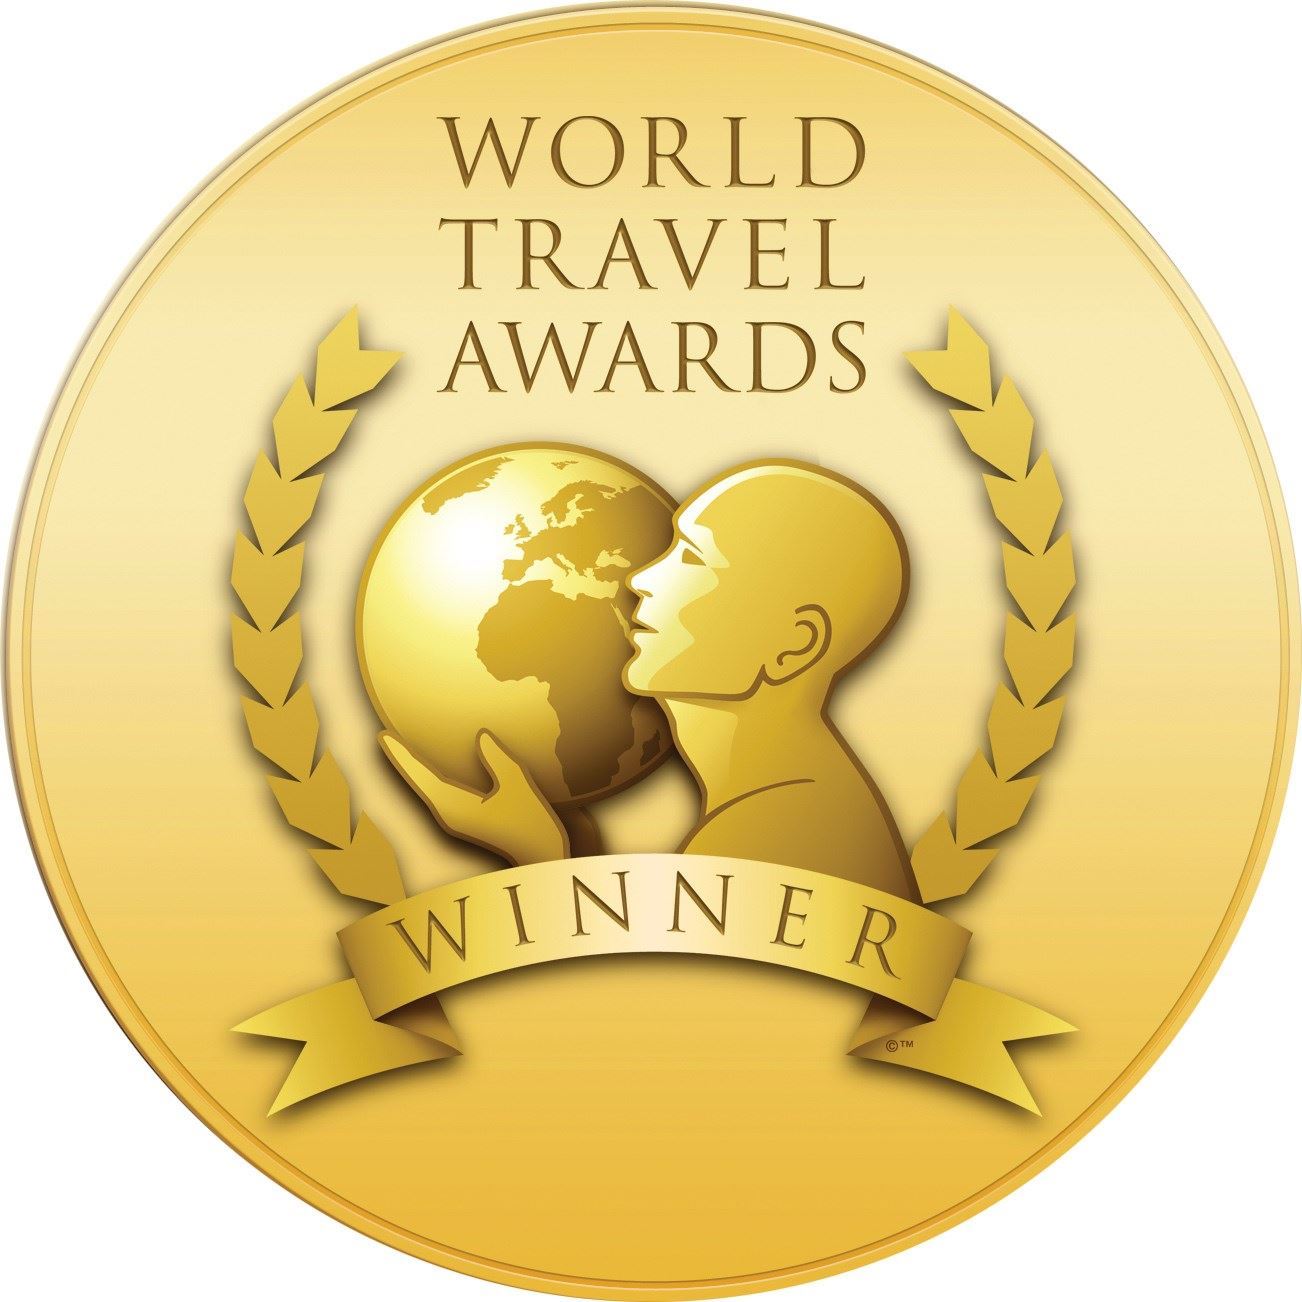 tourism awards won